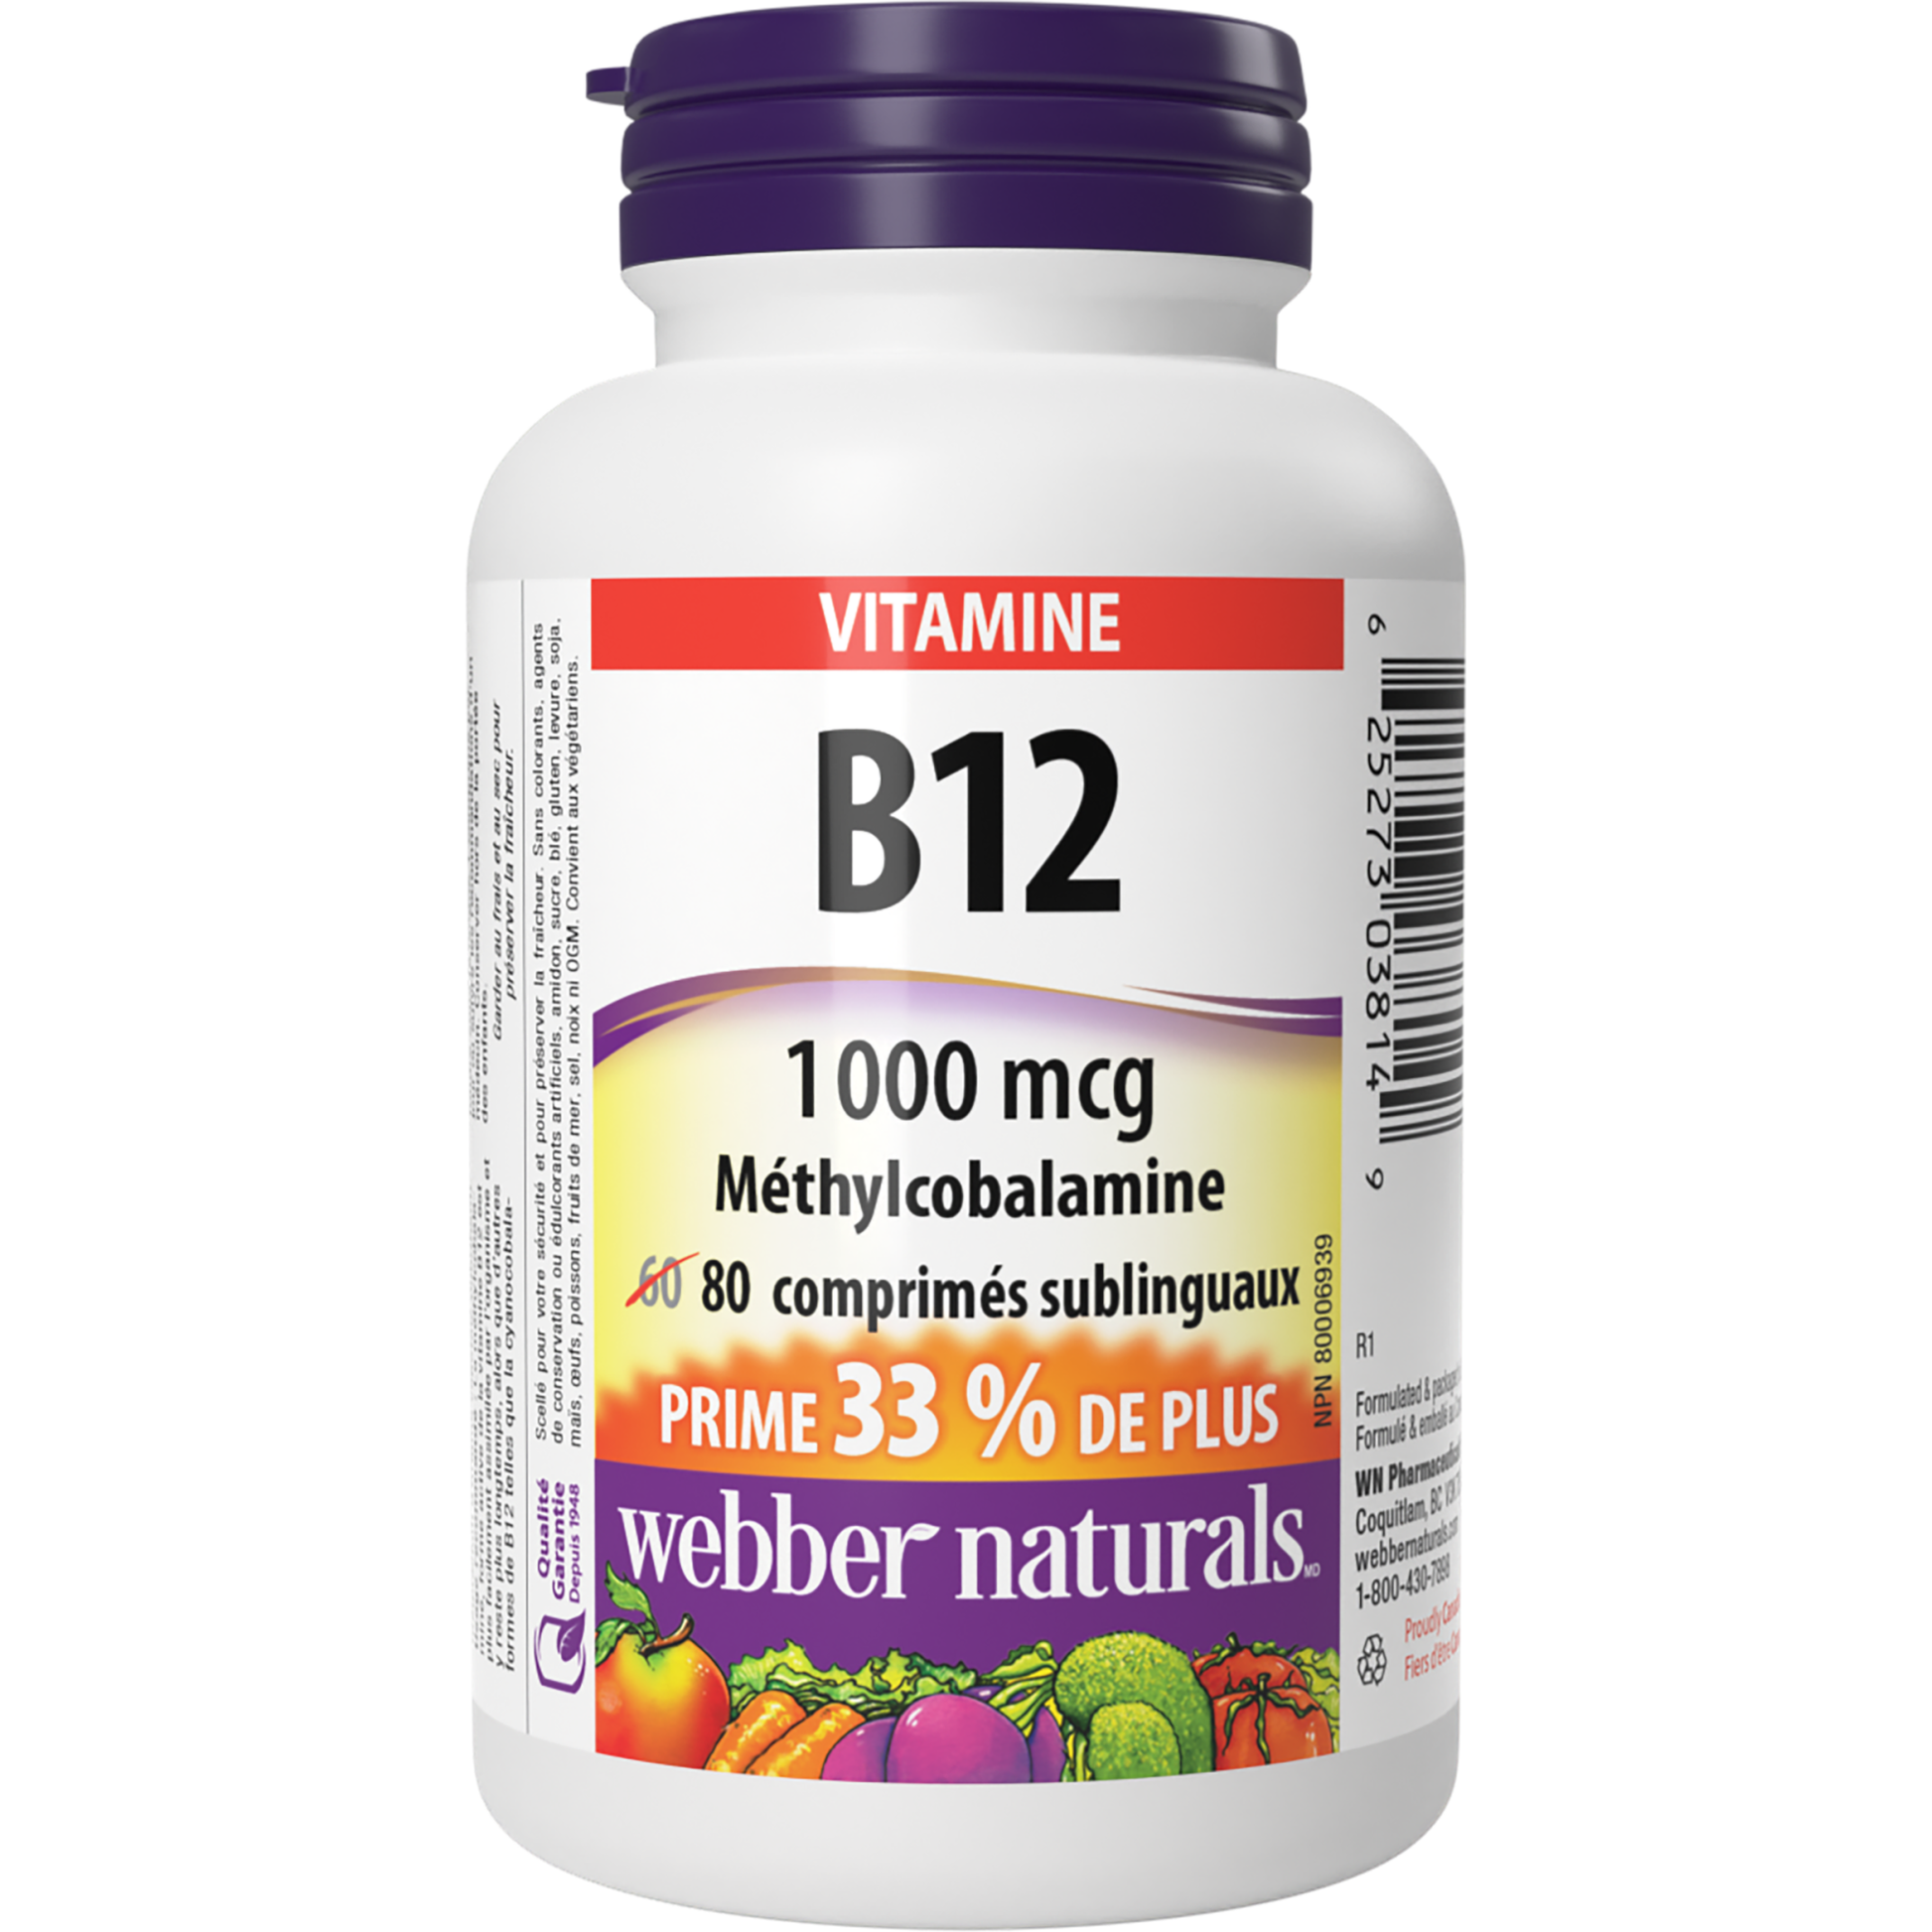 Vitamine B12 méthylcobalamine 1 000 mcg for Webber Naturals|v|hi-res|WN3814